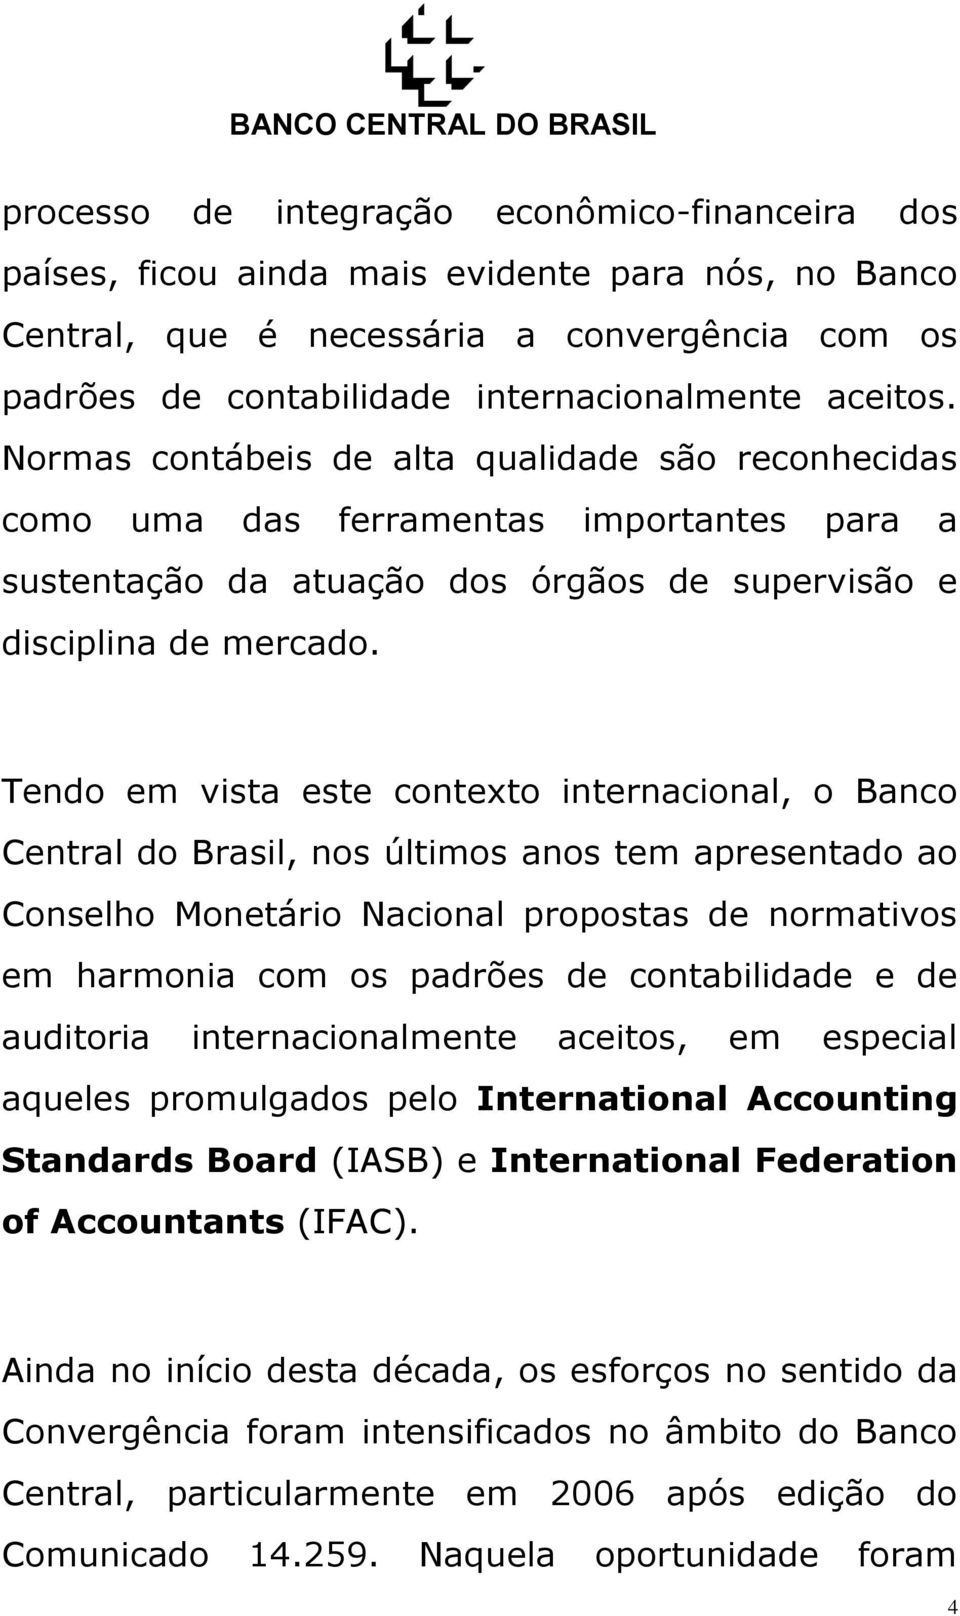 Tendo em vista este contexto internacional, o Banco Central do Brasil, nos últimos anos tem apresentado ao Conselho Monetário Nacional propostas de normativos em harmonia com os padrões de